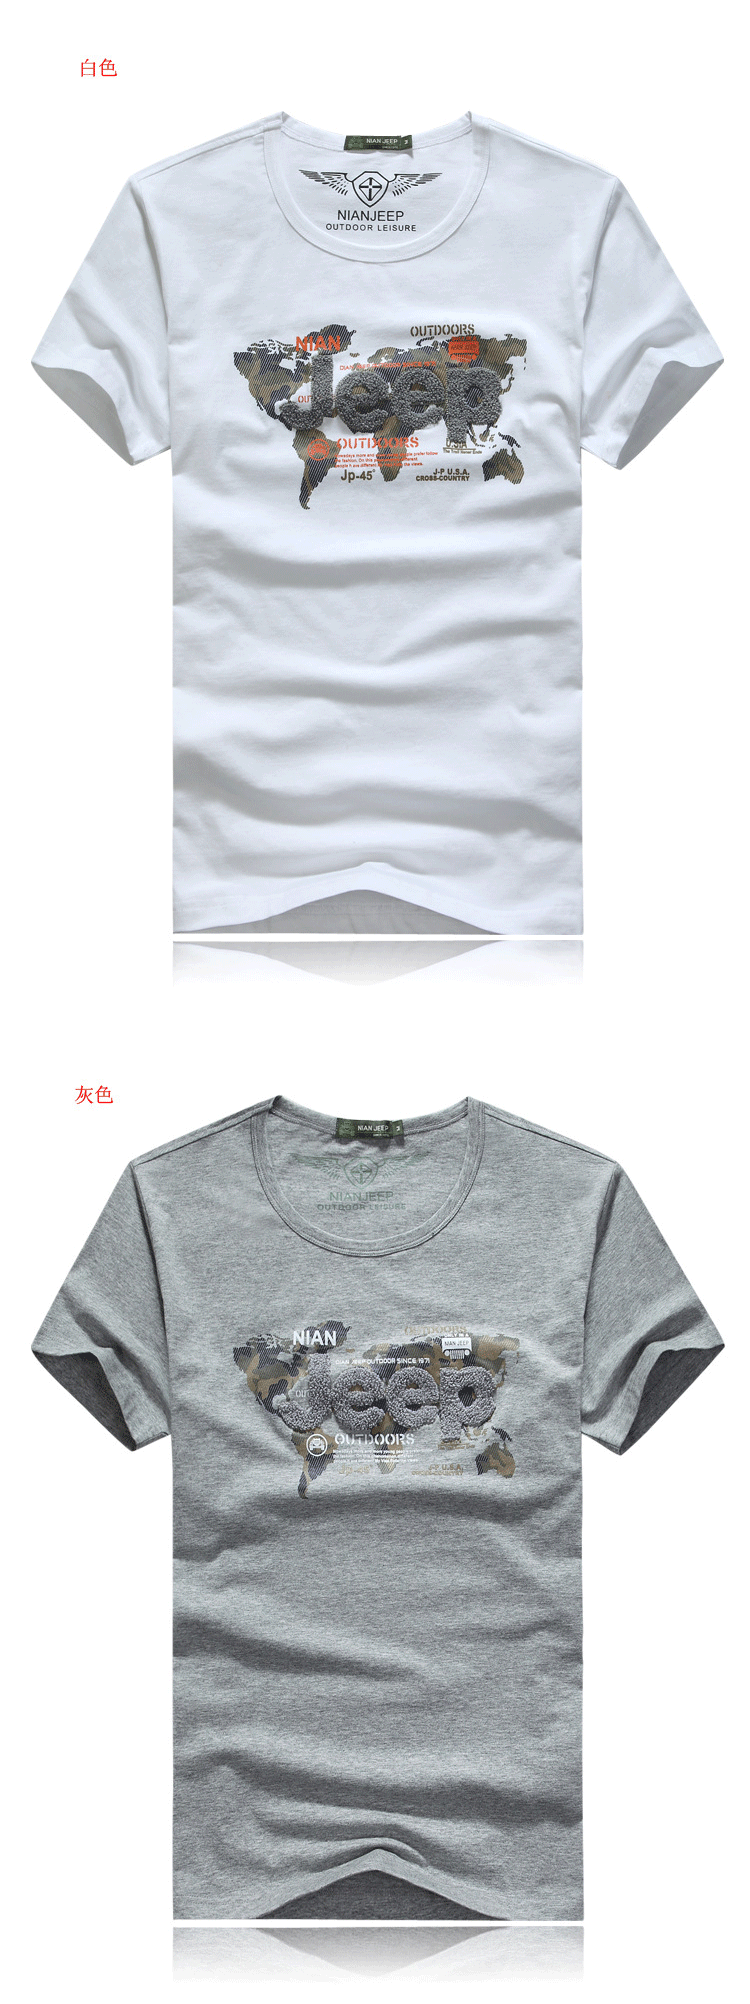 2件装】NIAN JEEP/吉普盾 夏季新款纯棉圆领T恤 男式短袖T恤9329